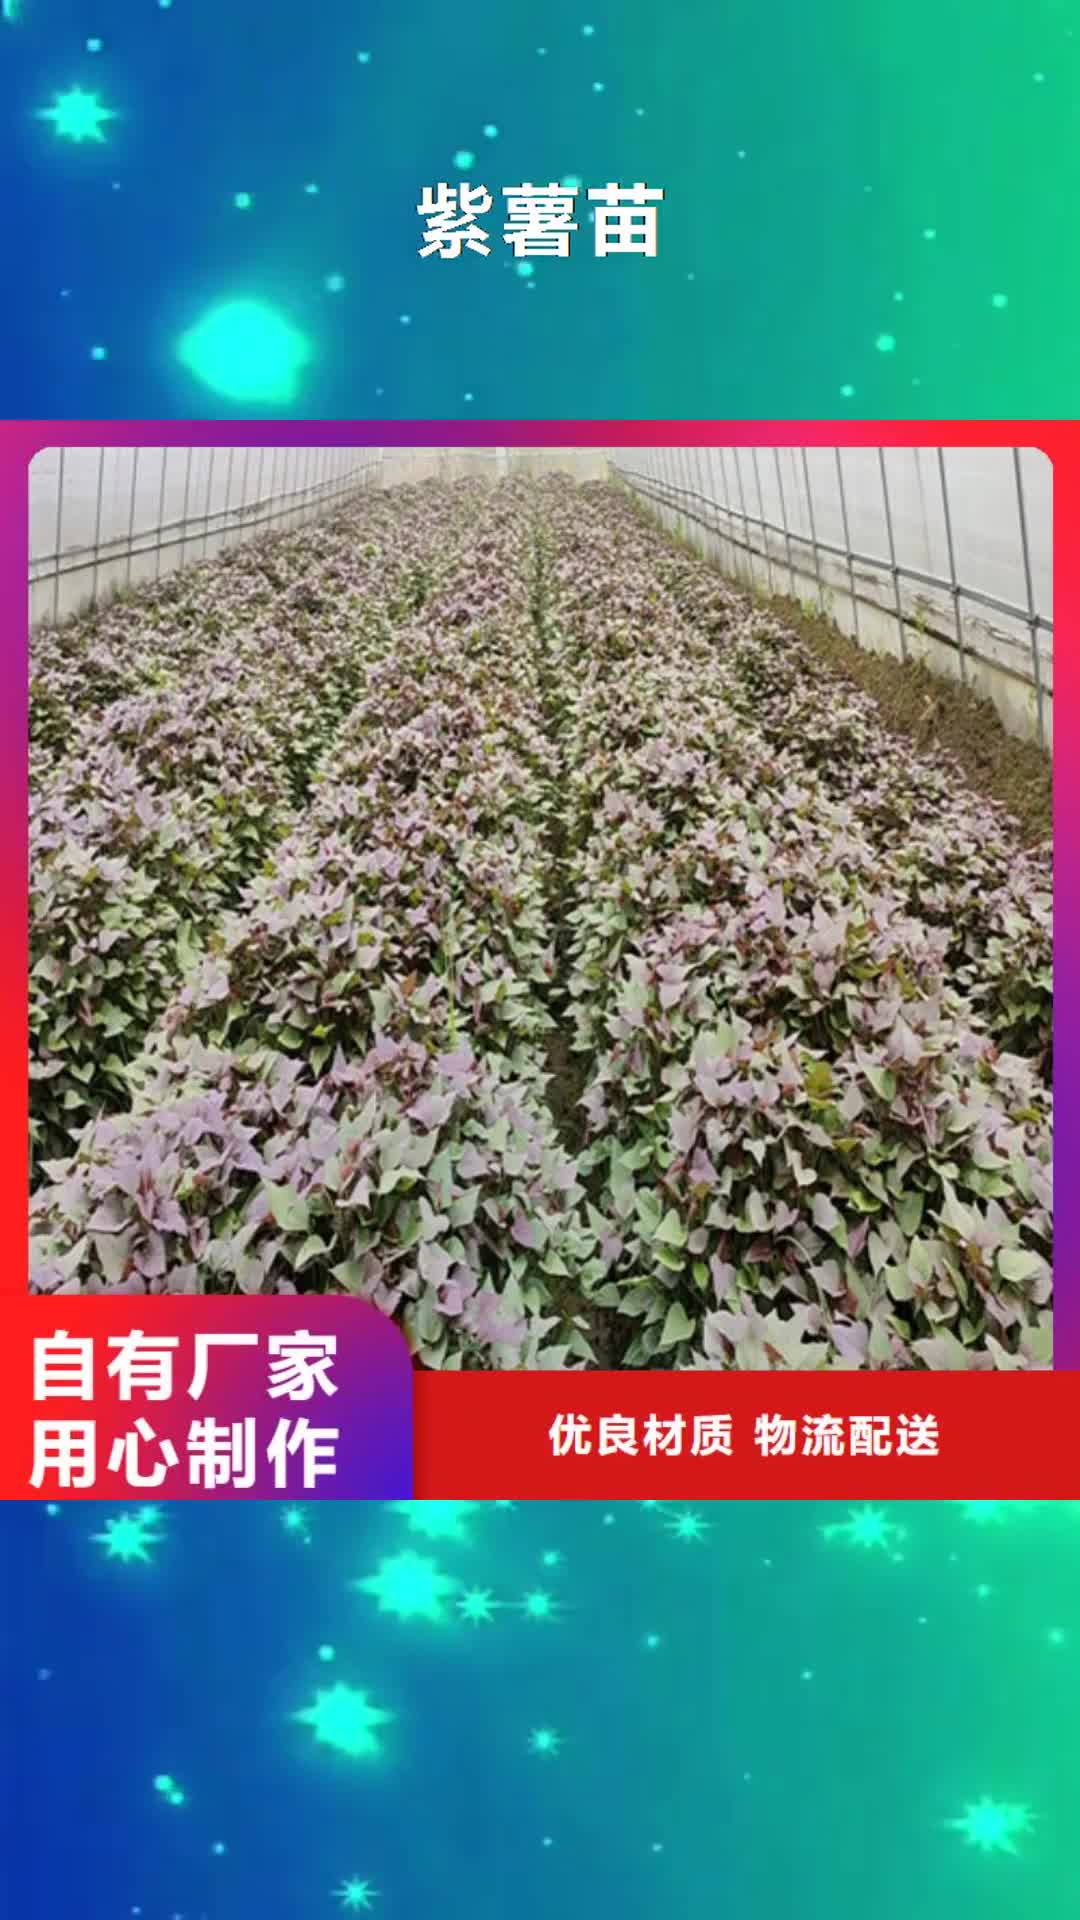 荆州【紫薯苗】 胡萝卜粉多种规格供您选择